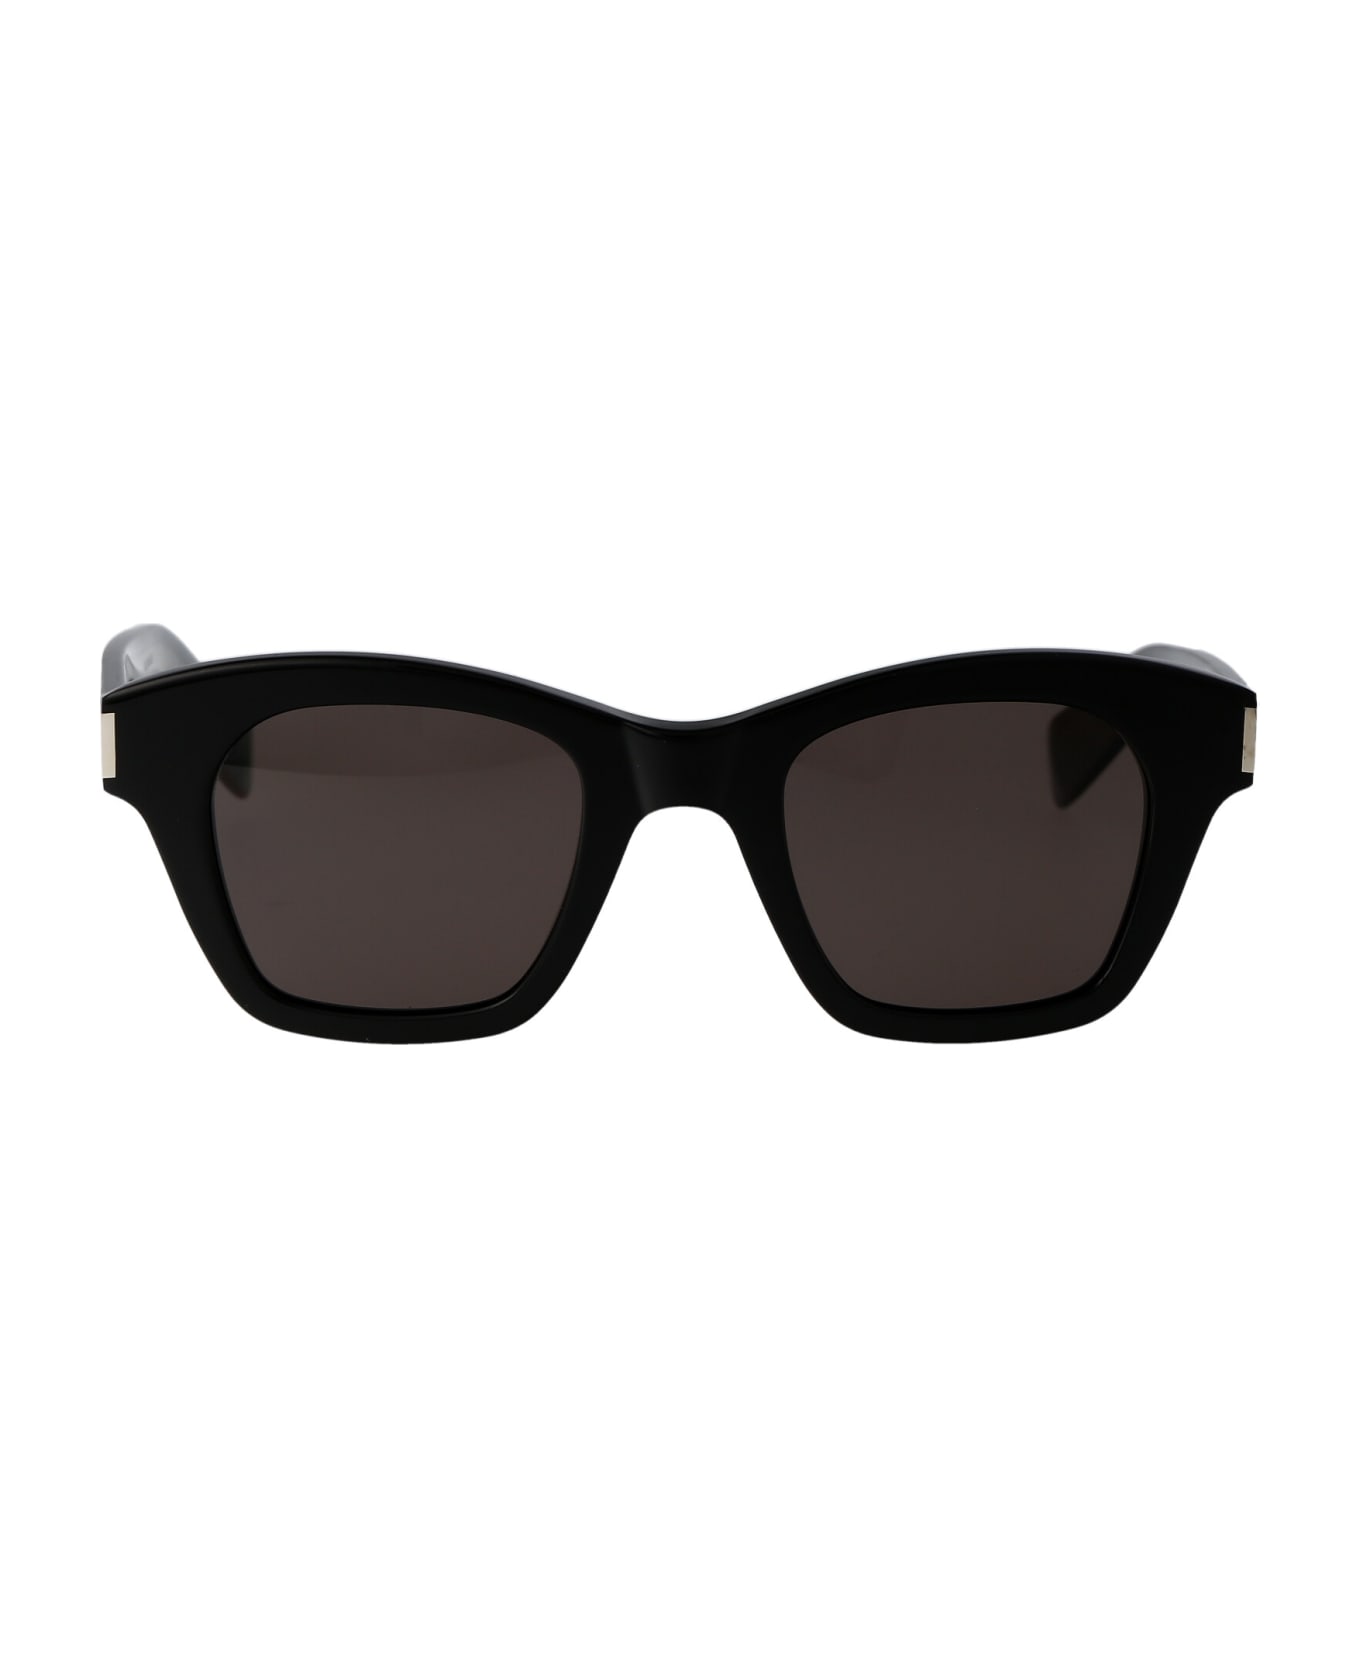 Saint Laurent Eyewear Sl 592 Sunglasses - 001 BLACK BLACK BLACK